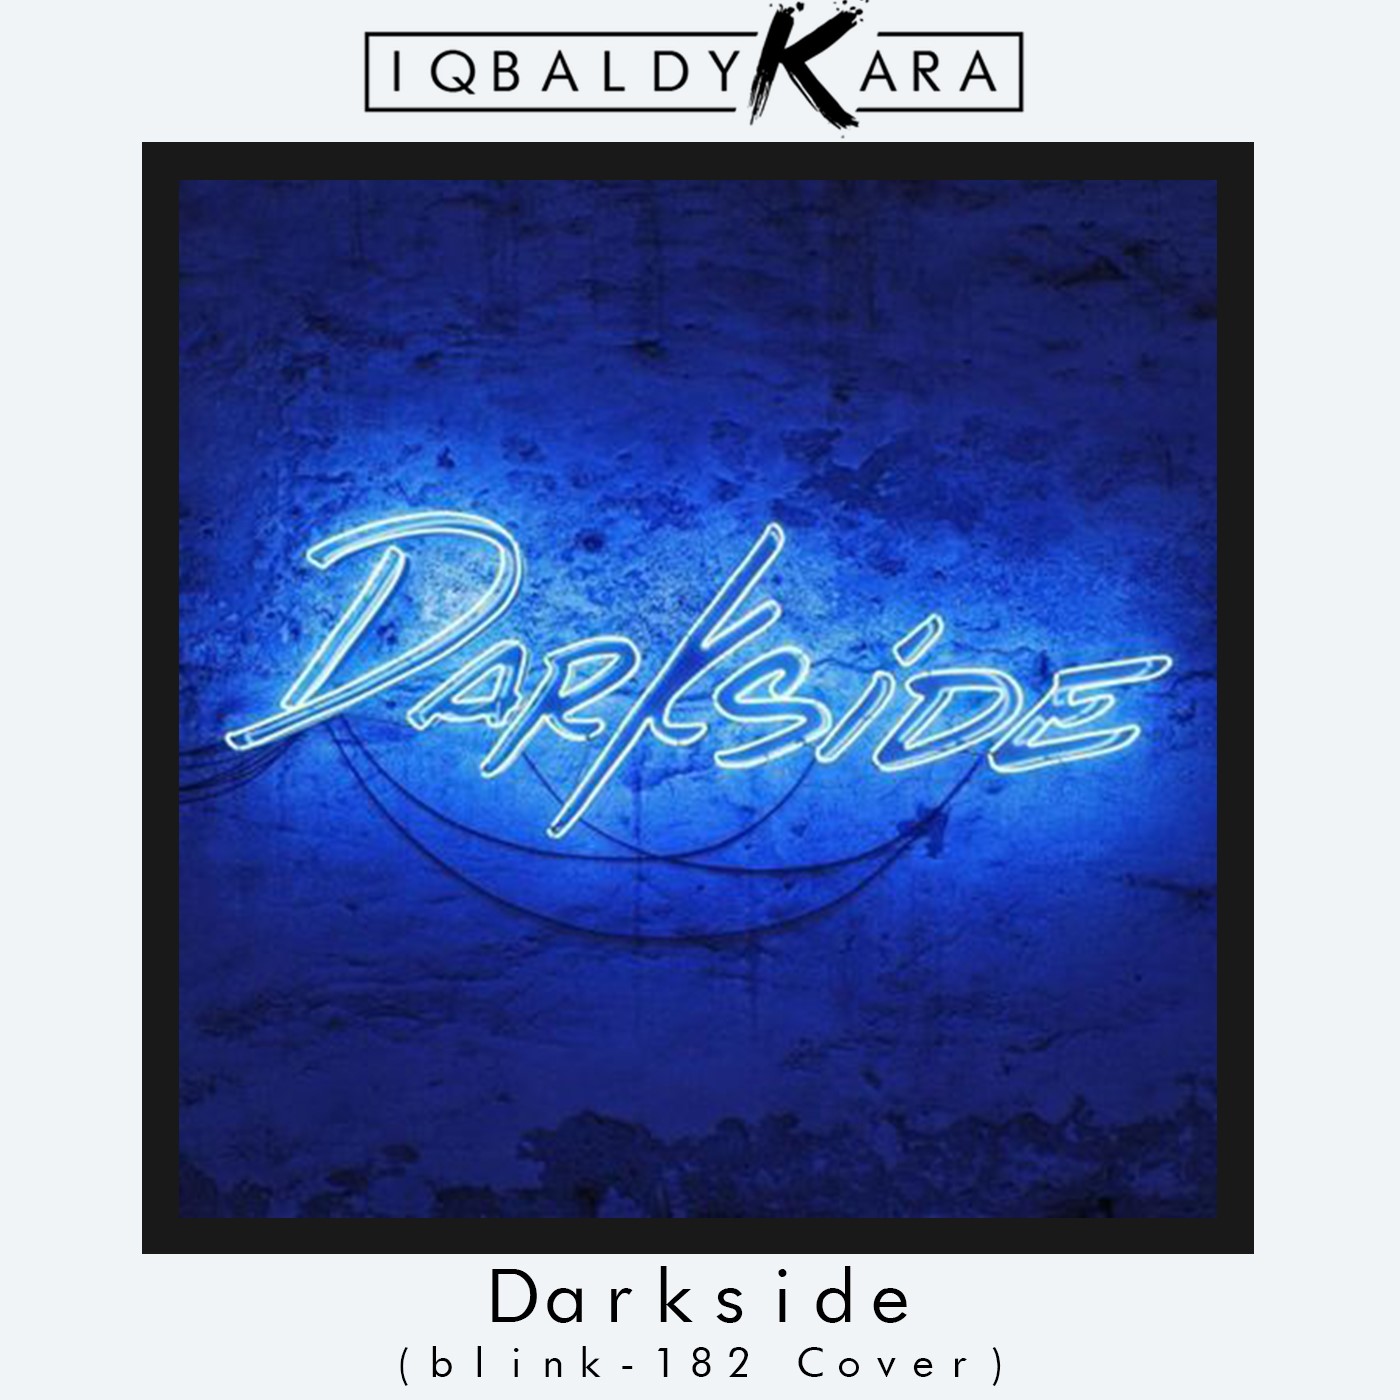 Preuzimanje datoteka Darkside (blink-182 Cover)